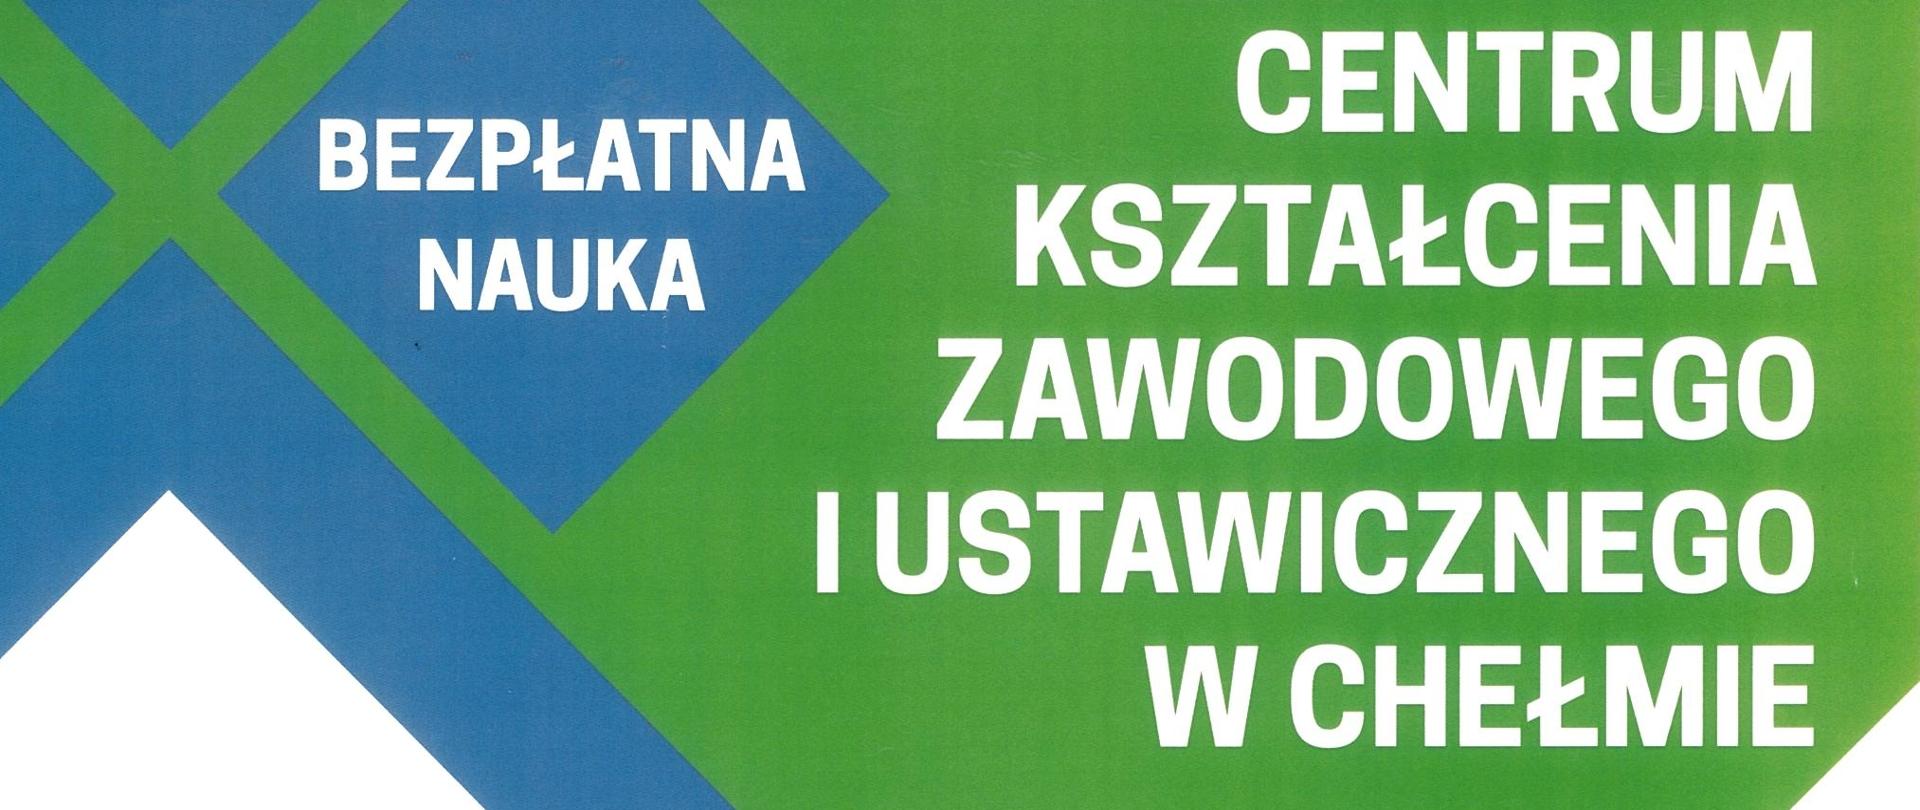 Plakat Centrum Kształcenia Zawodowego i Ustawicznego w Chełmie